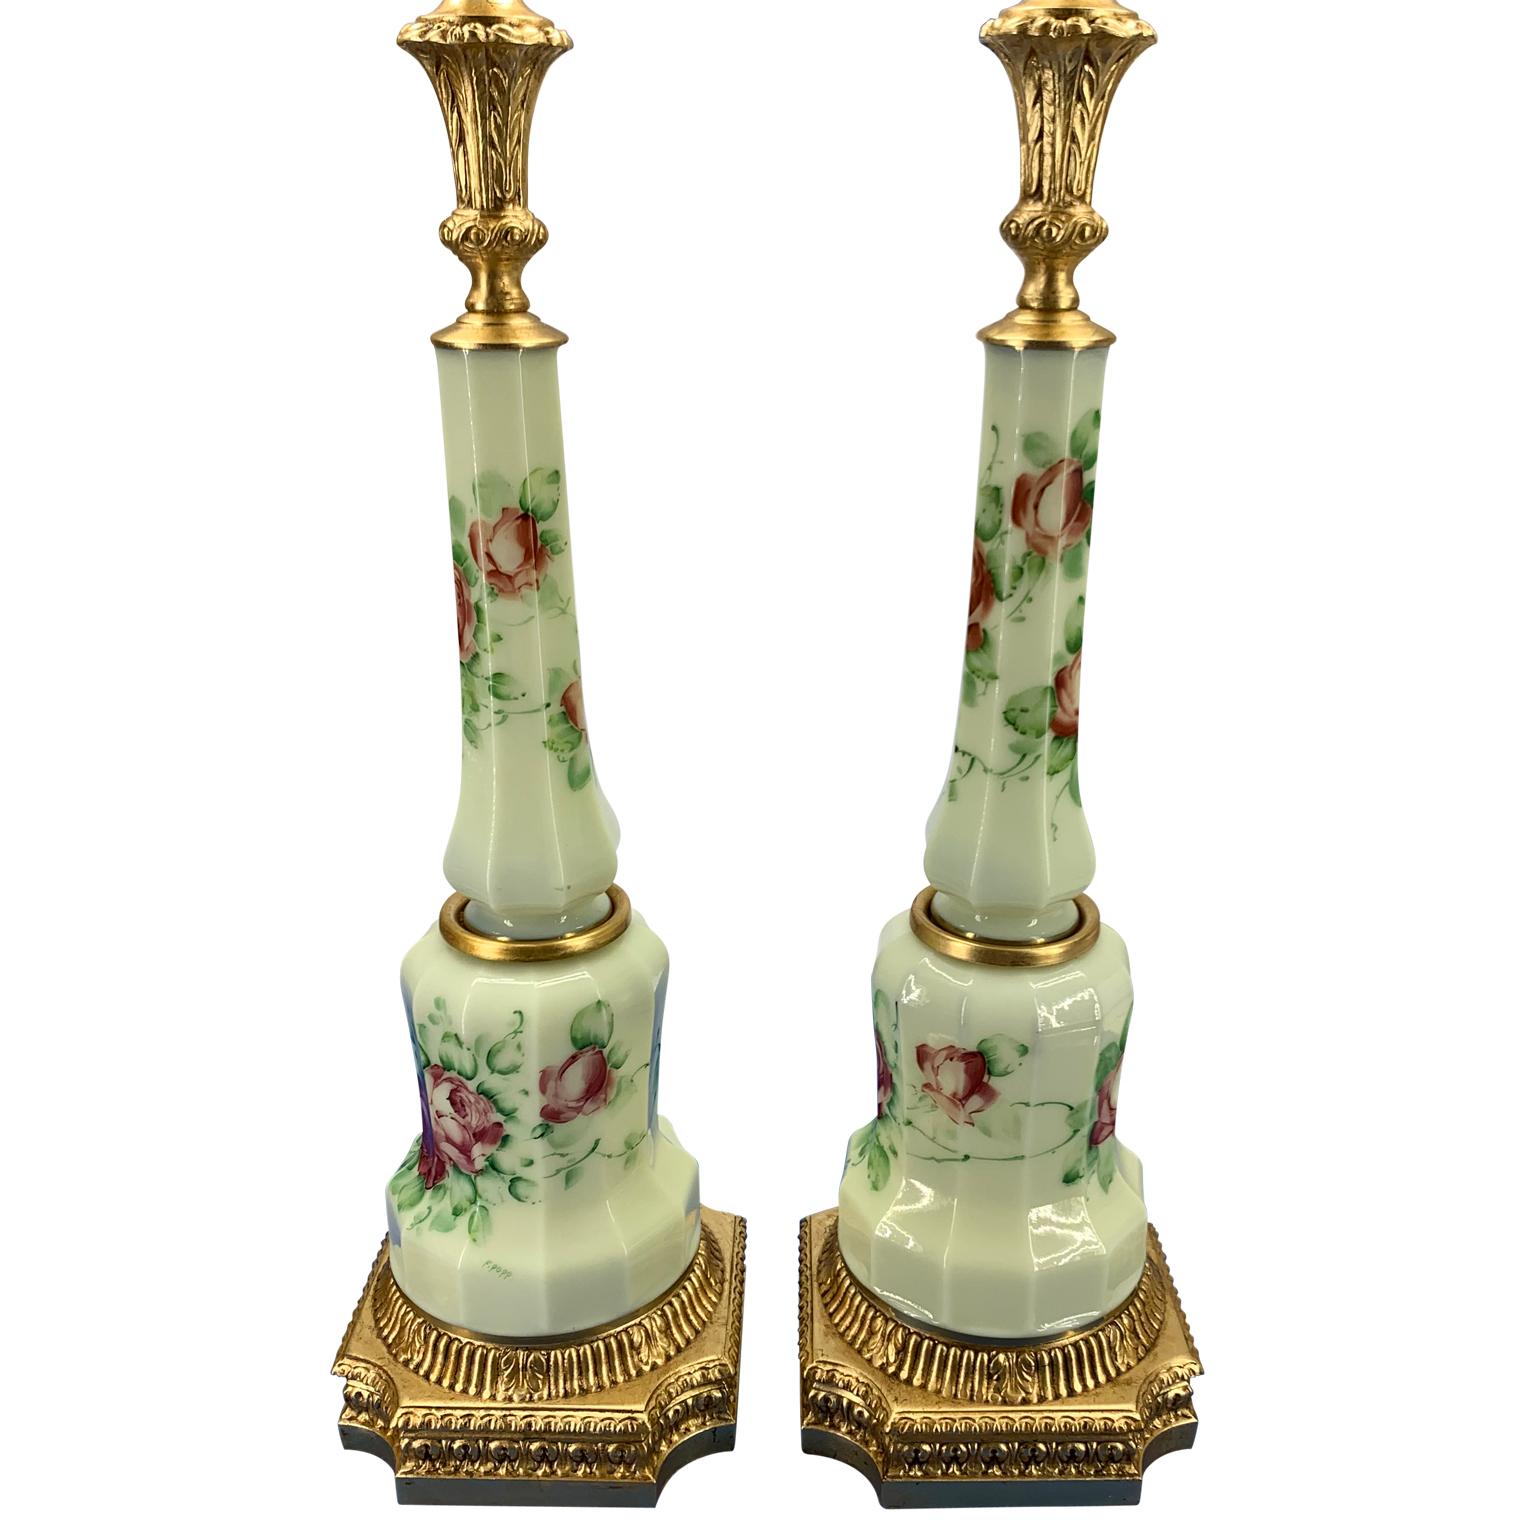 Paar antike französische Opalintischlampen mit facettiertem Blumendekor und Signatur
Es handelt sich um Öllampen aus dem 19. Jahrhundert, die in elektrische Tischlampen umgewandelt wurden.